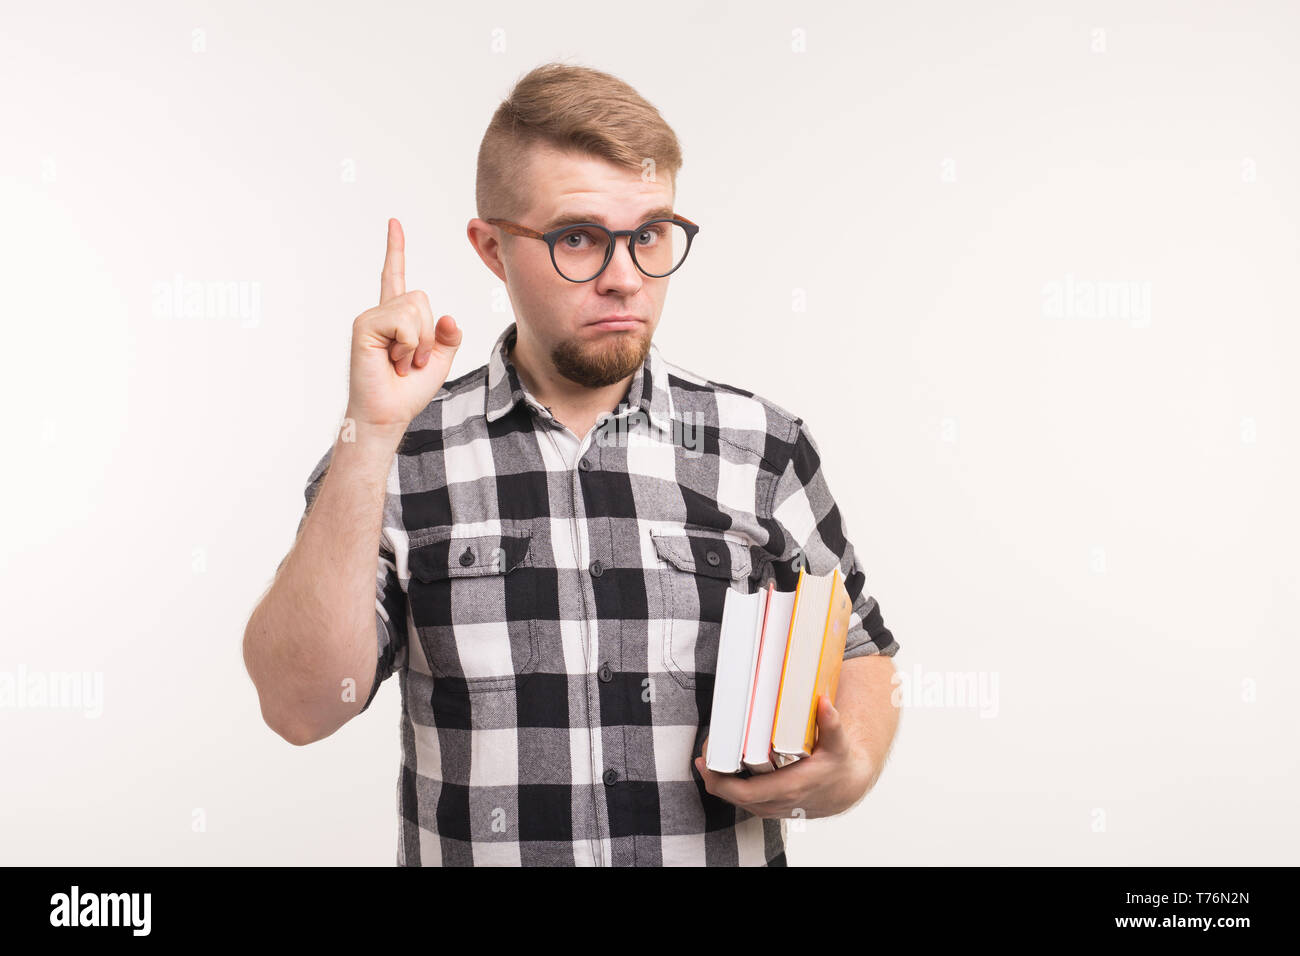 Geek, nerd et éducation concept - bel homme en chemise à carreaux doigts  jusqu'over white background Photo Stock - Alamy